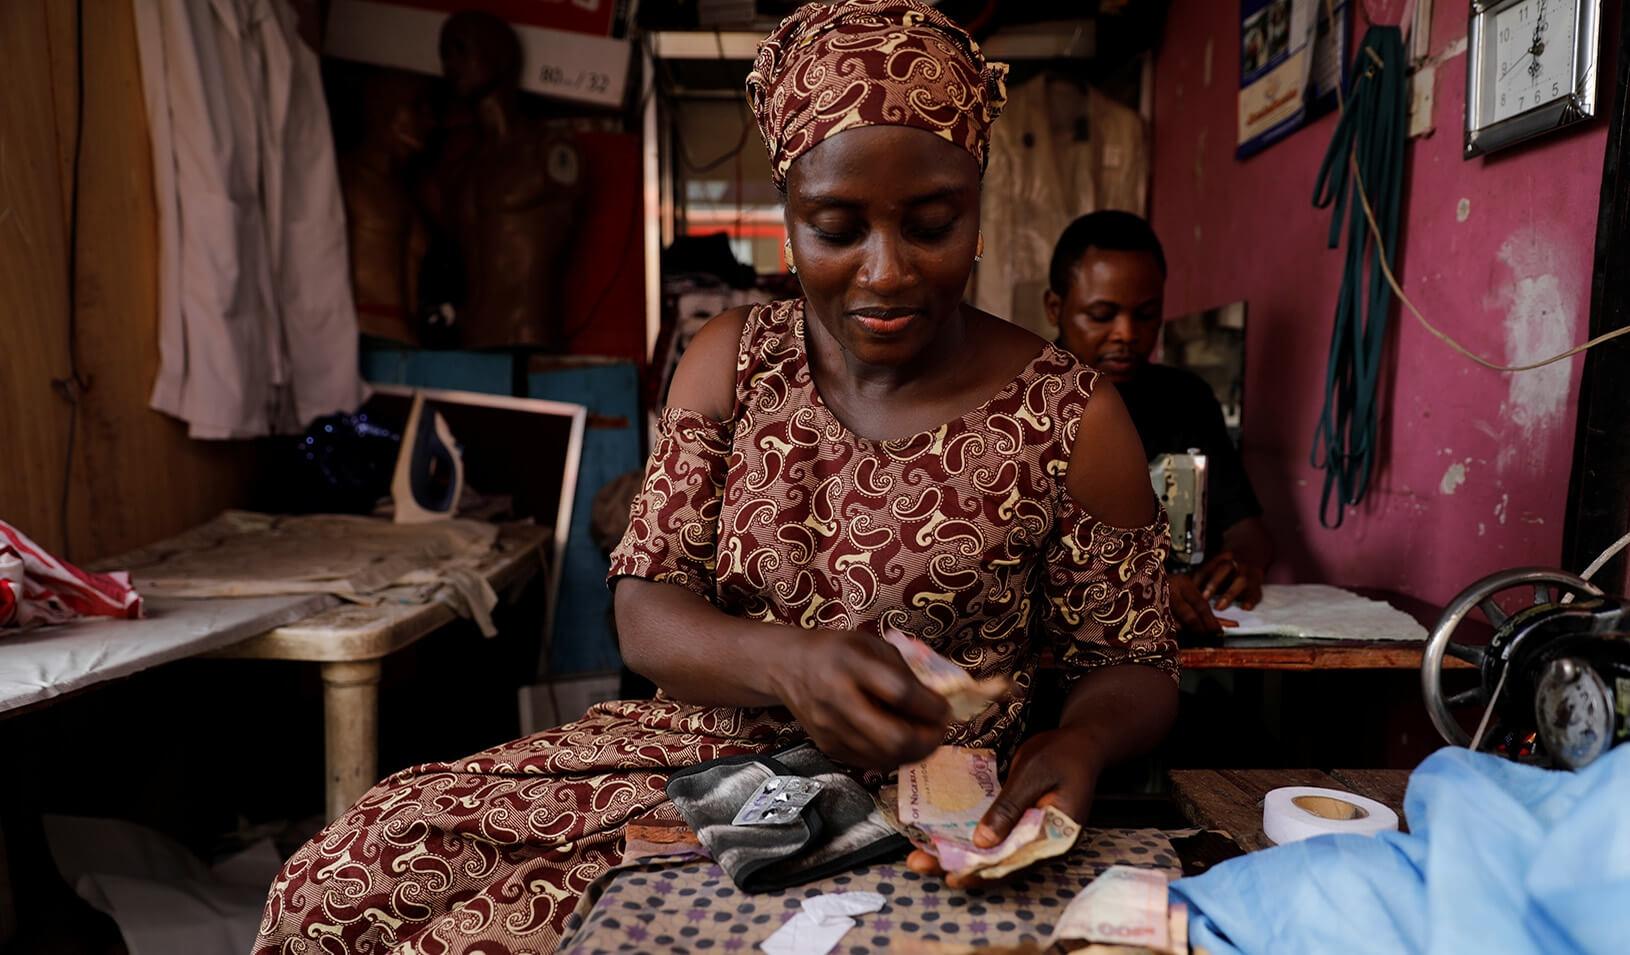 Women Entrepreneurs In Emerging Markets